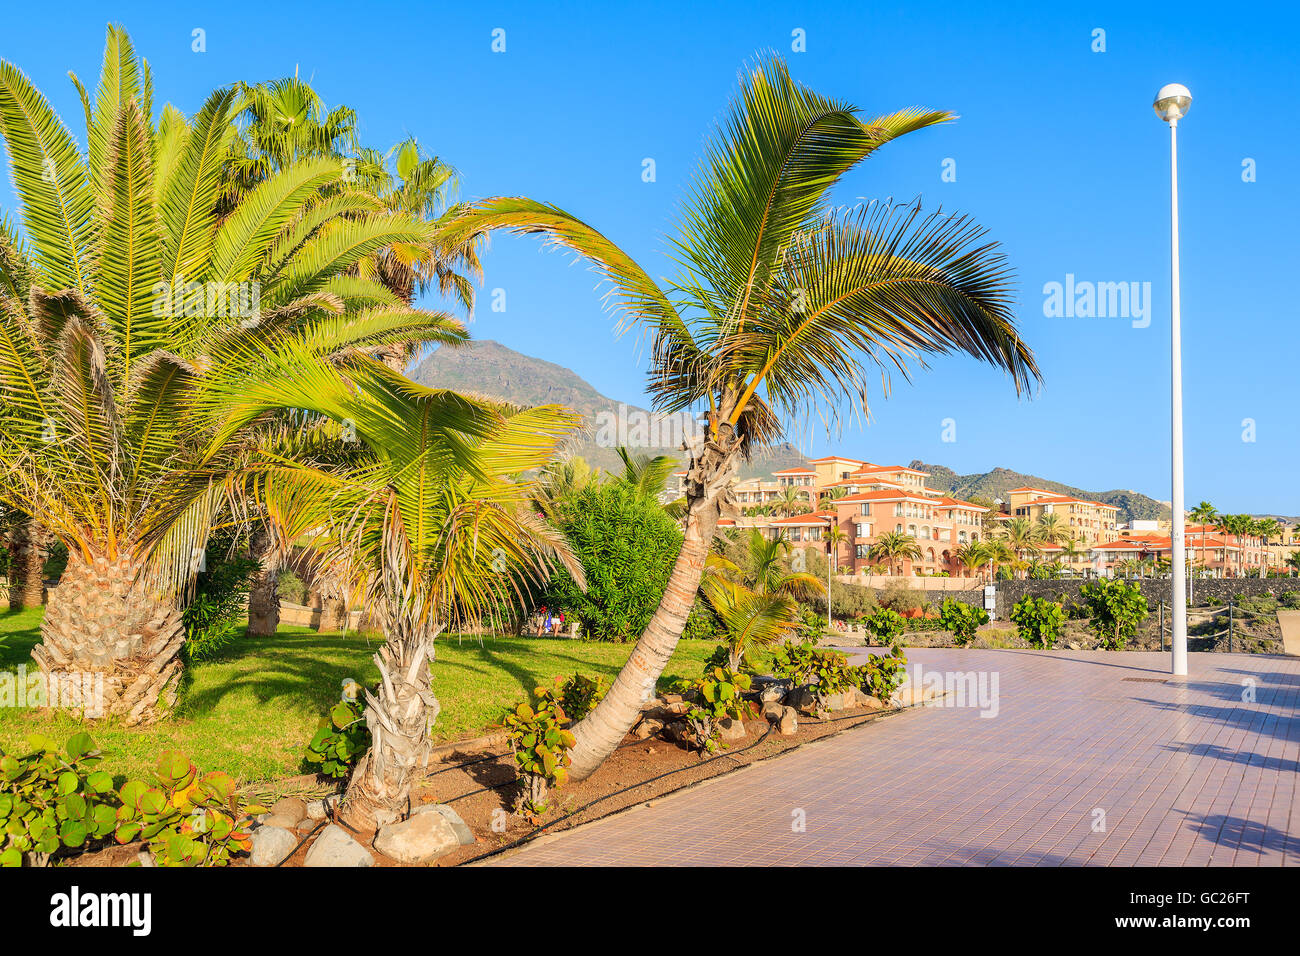 Promenade côtière exotique avec des palmiers au Costa Adeje maison de ville, Tenerife, Canaries, Espagne Banque D'Images